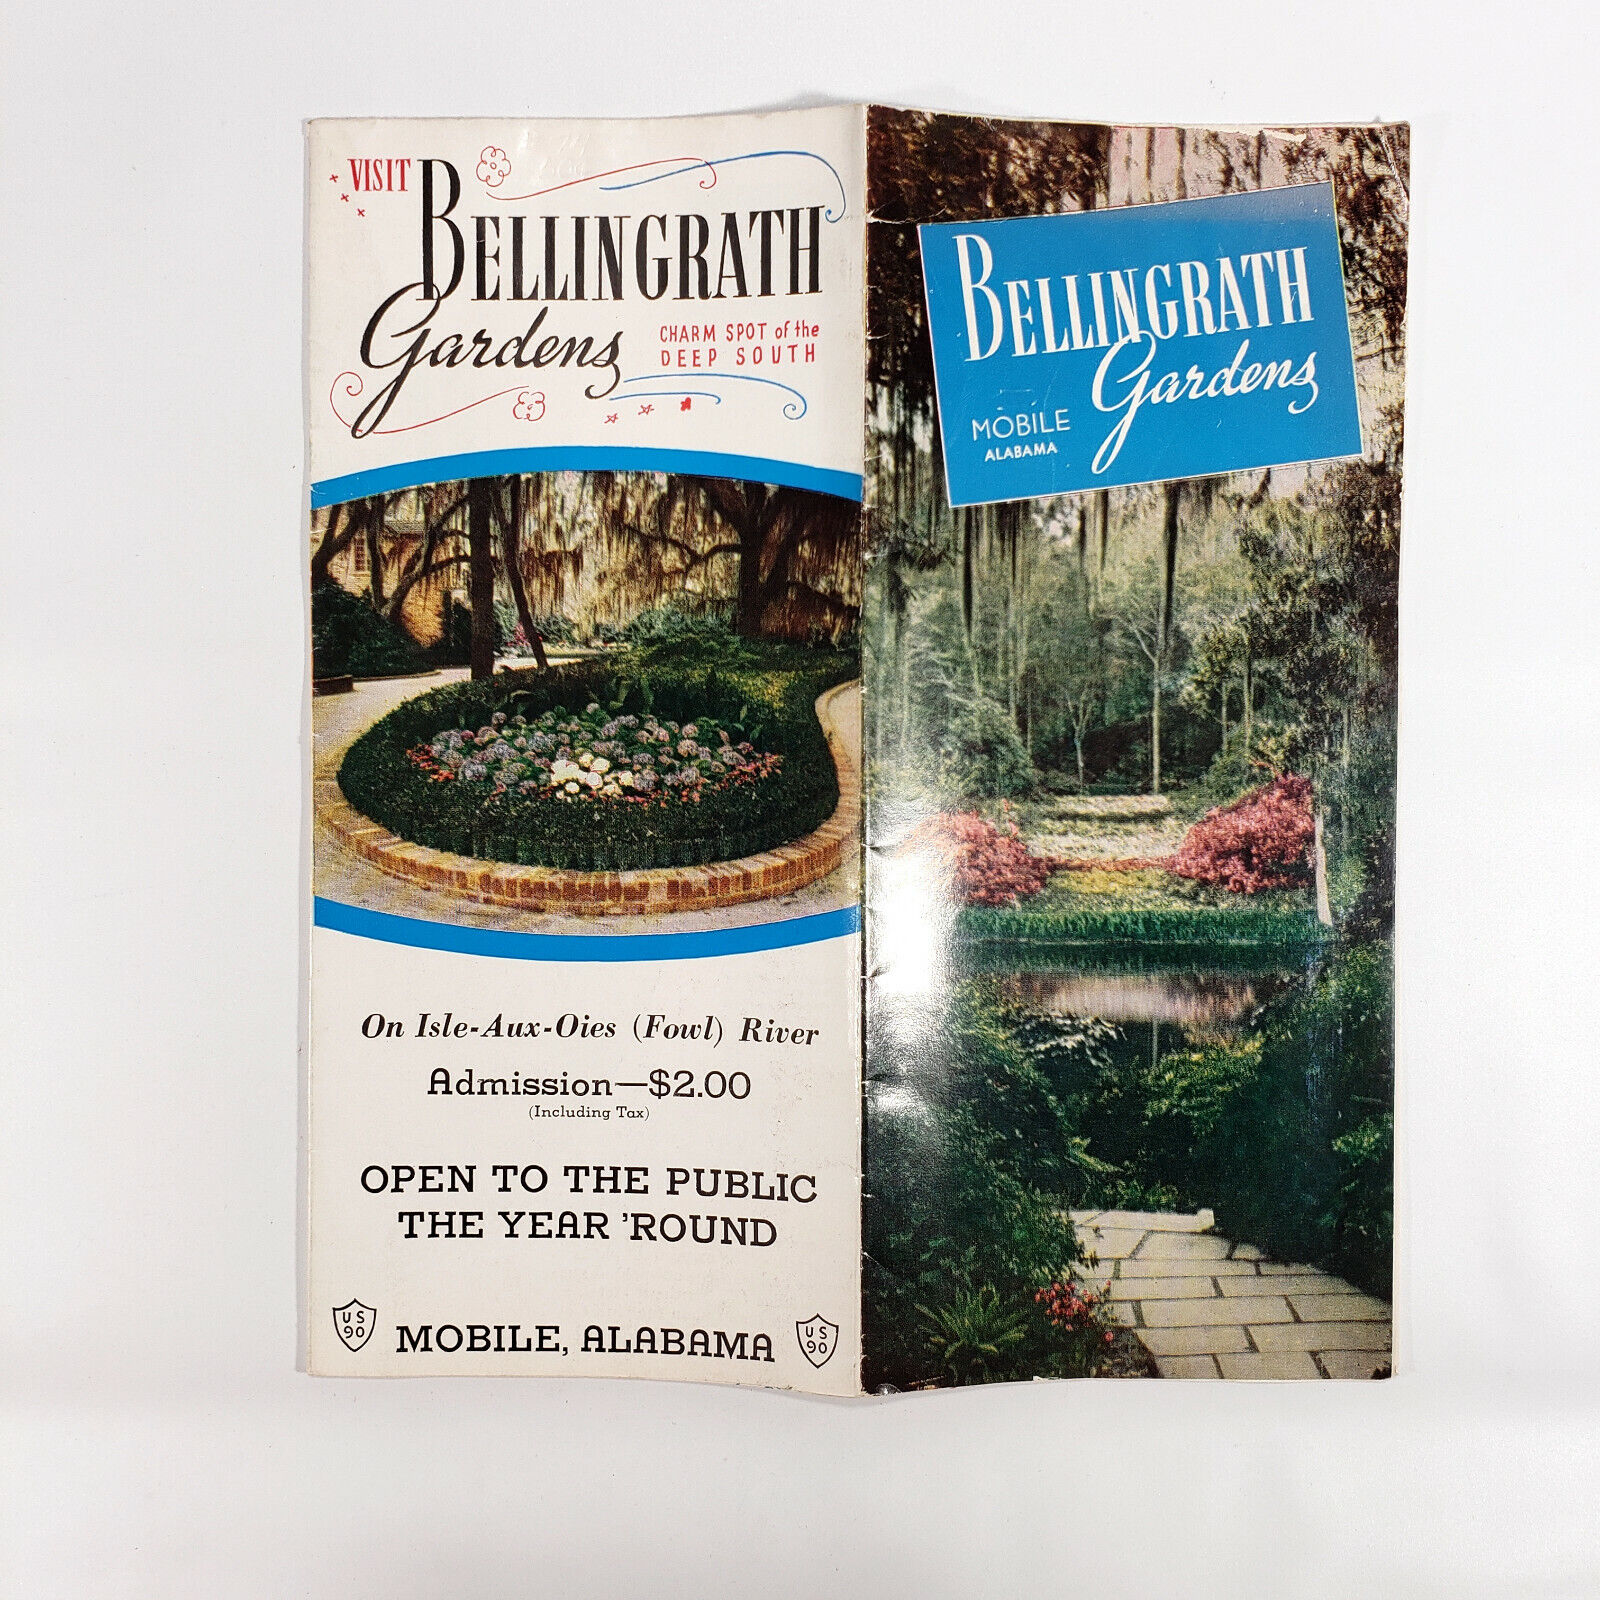 1950s Bellingrath Gardens Vintage Travel Brochure Mobile Alabama Flowers Trees